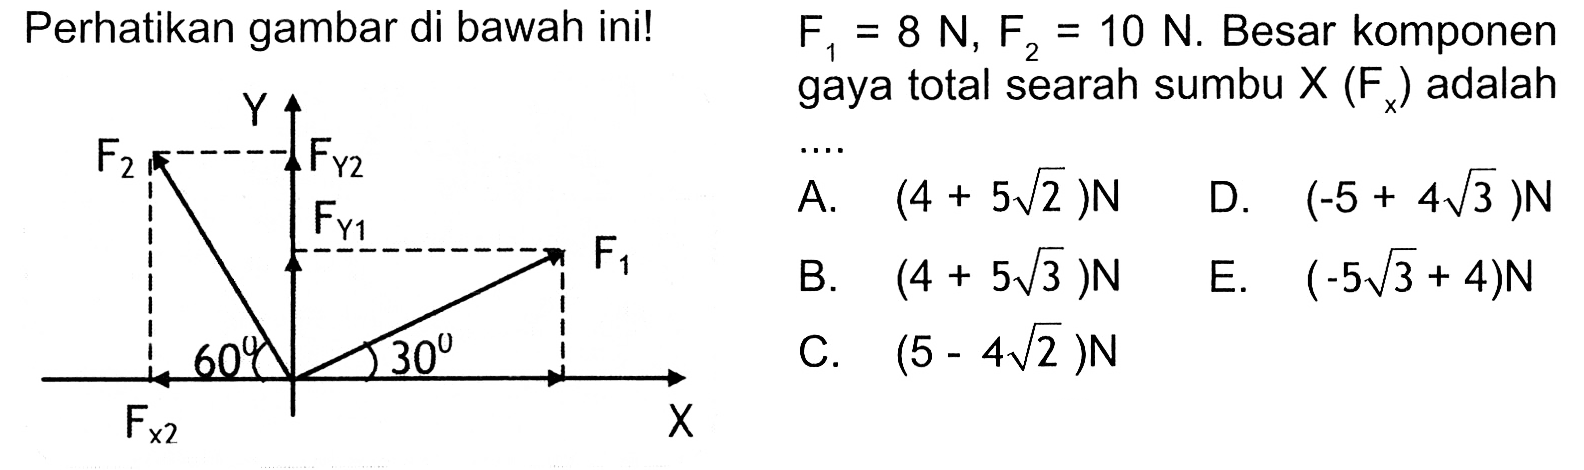 Perhatikan gambar di bawah ini! F1 = 8 N, F2 = 10 N. Besar komponen gaya total searah sumbu X (Fx) adalah .... Y F2 FY2 FY1 F1 60 30 FX2 X